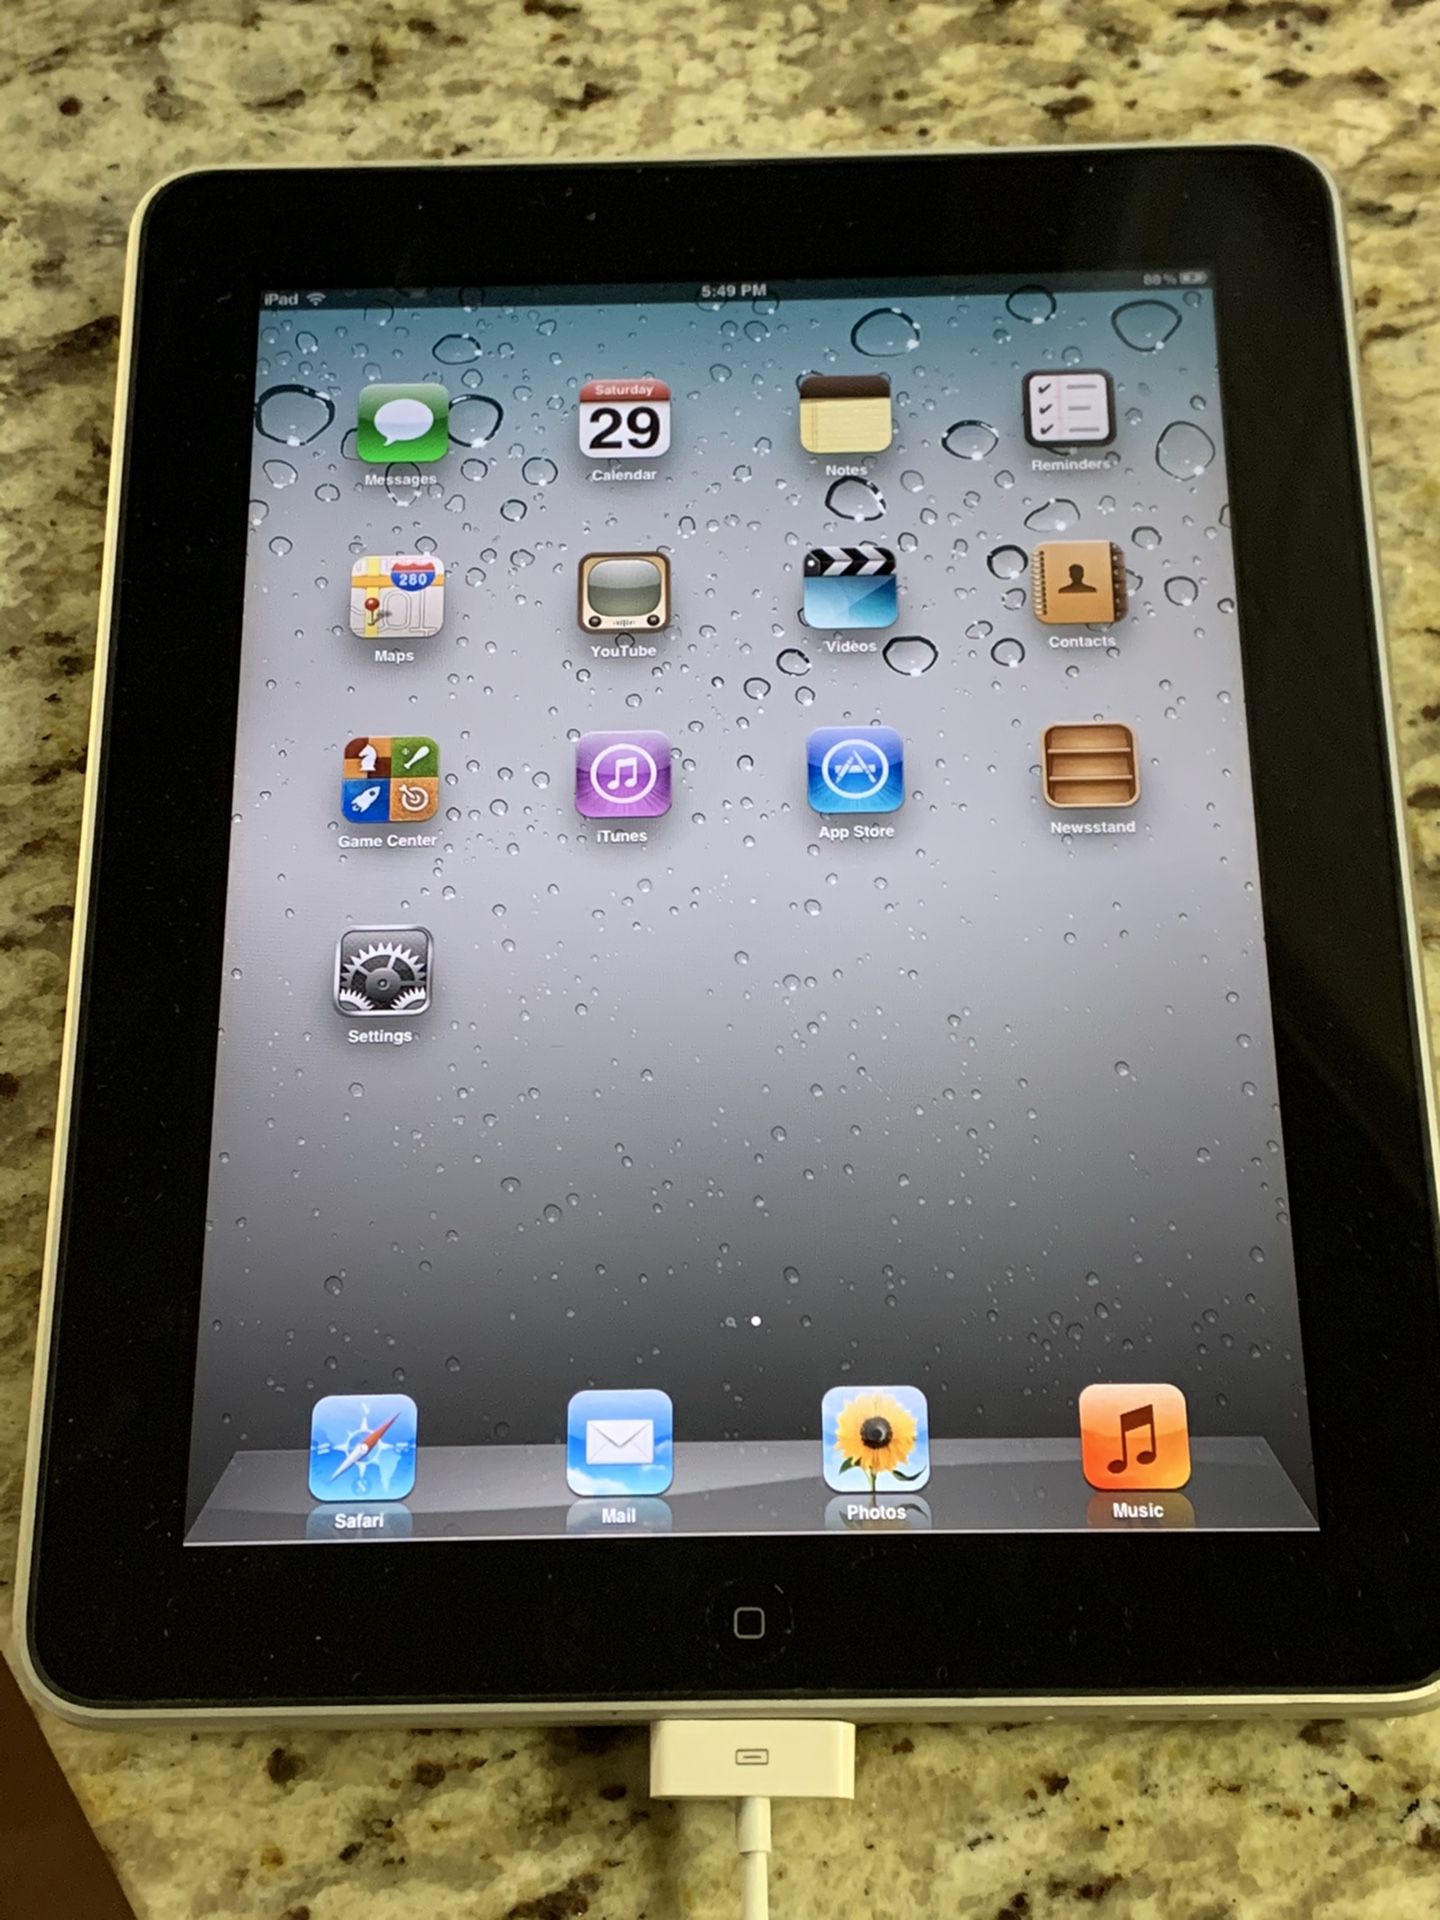 iPad Model A1219